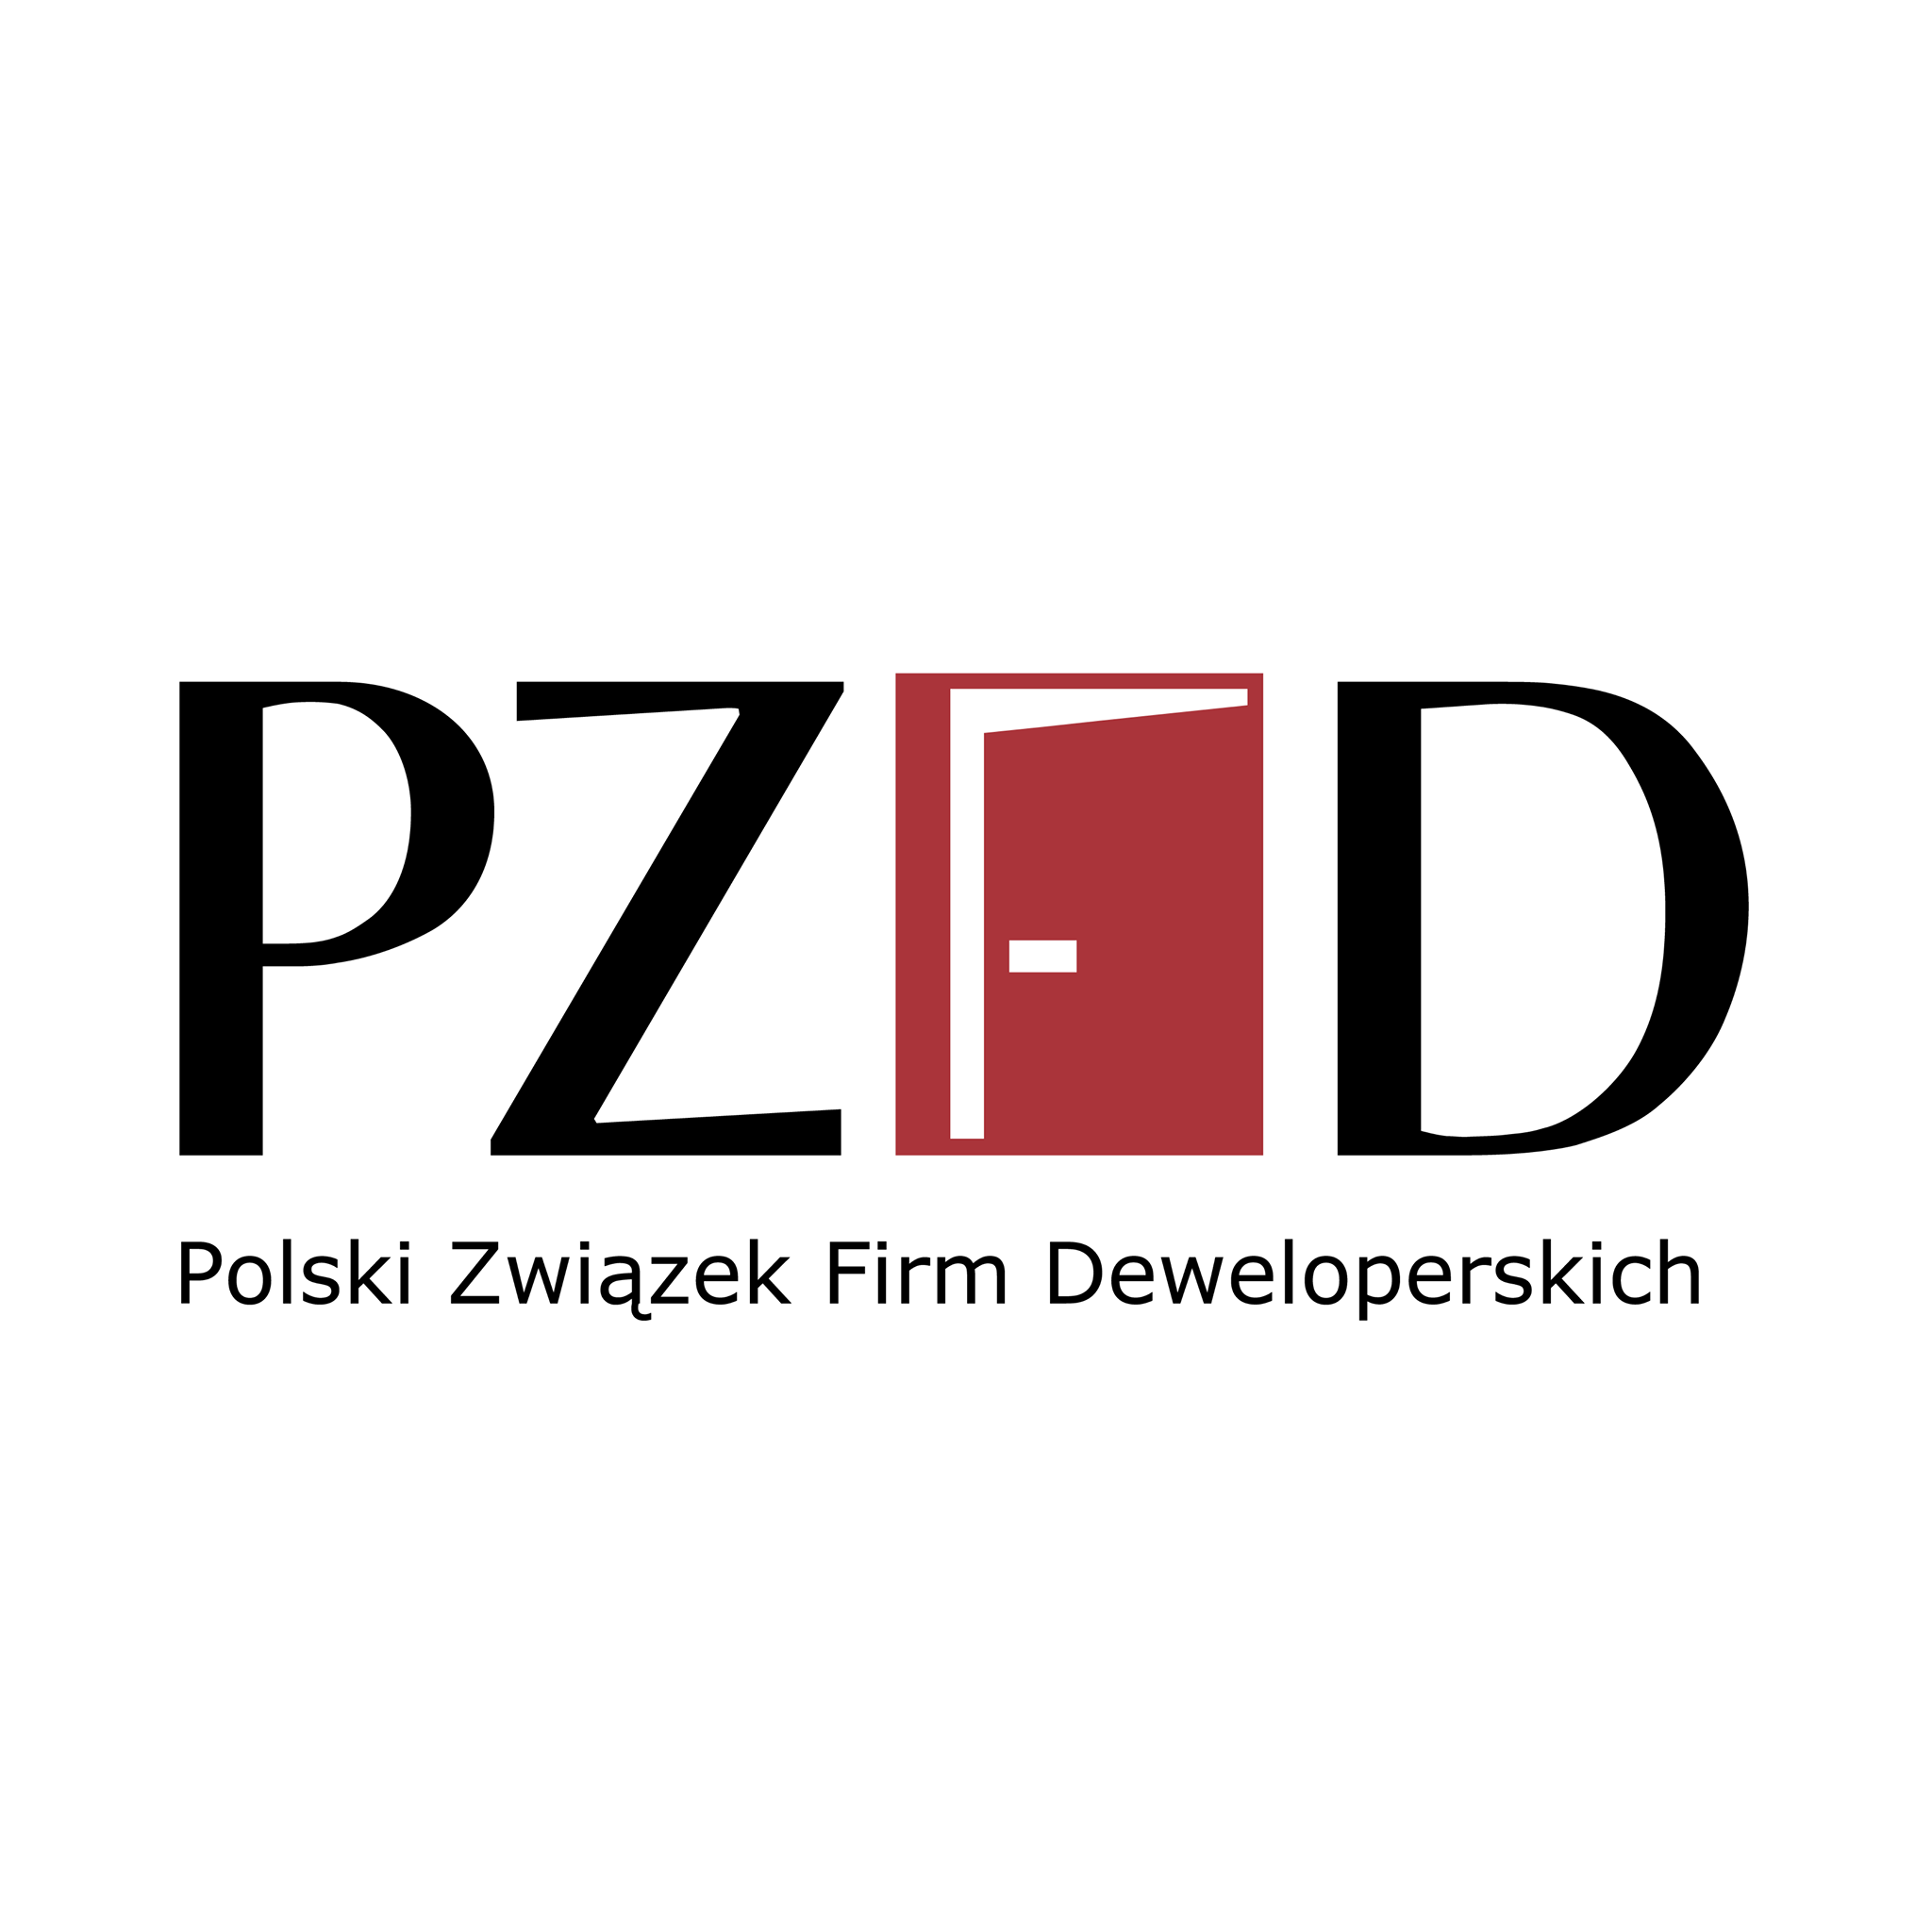 Polski Związek Firm Deweloperskich szuka